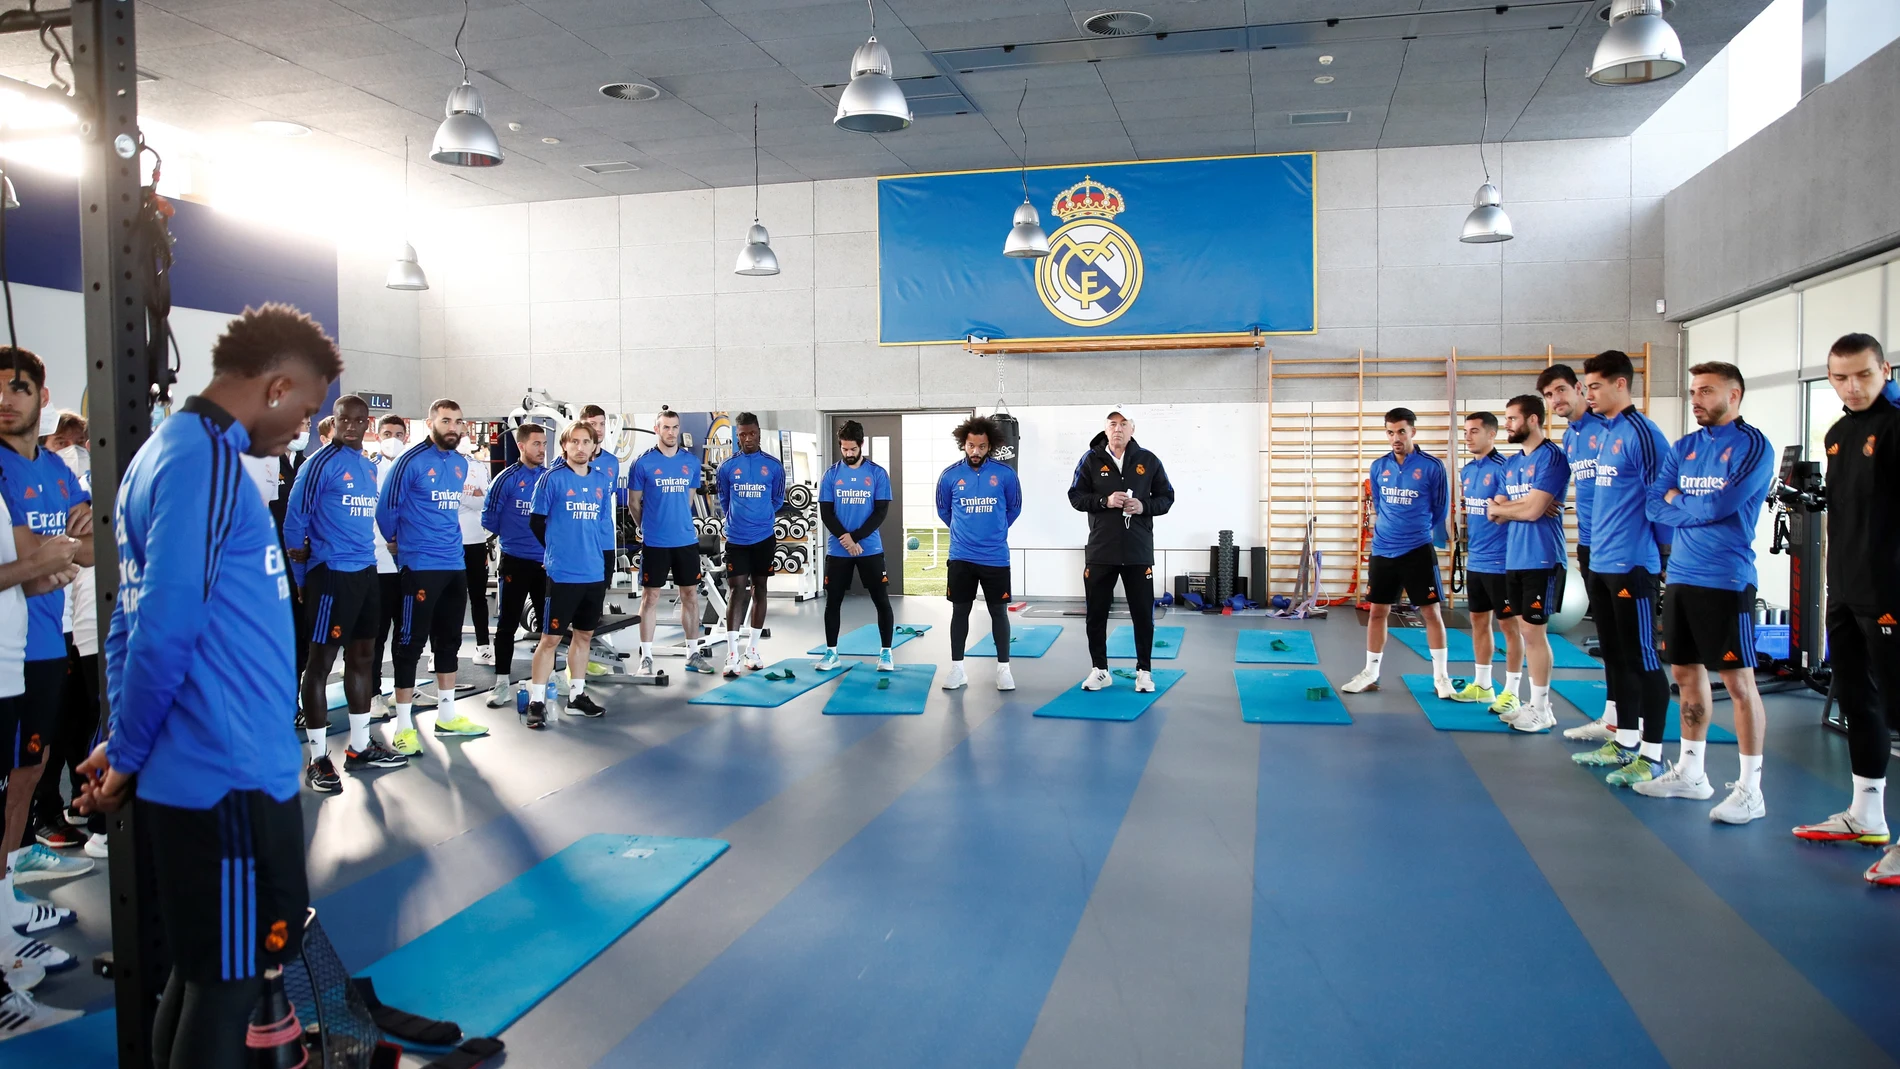 La primera plantilla y el cuerpo técnico del Real Madrid de fútbol guardaron un emotivo minuto de silencio antes de comenzar el entrenamiento en memoria de Paco Gento